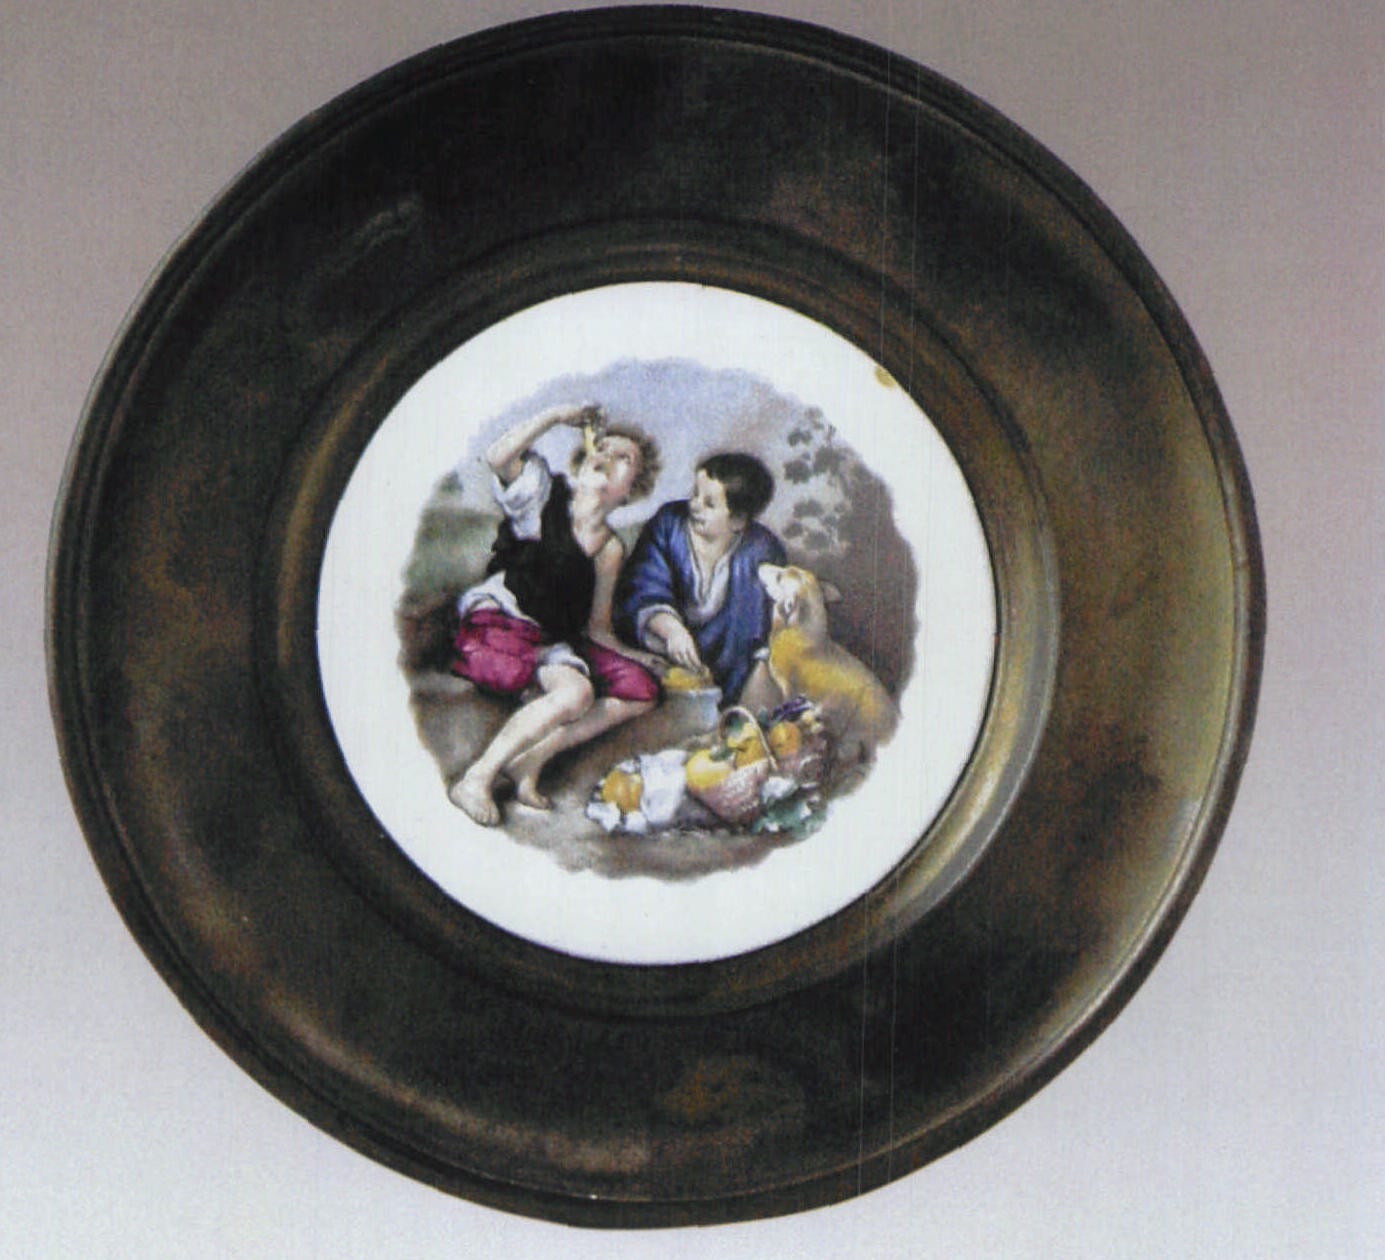 二十世纪早期意大利金属边缘彩绘婴戏人物纹瓷盘